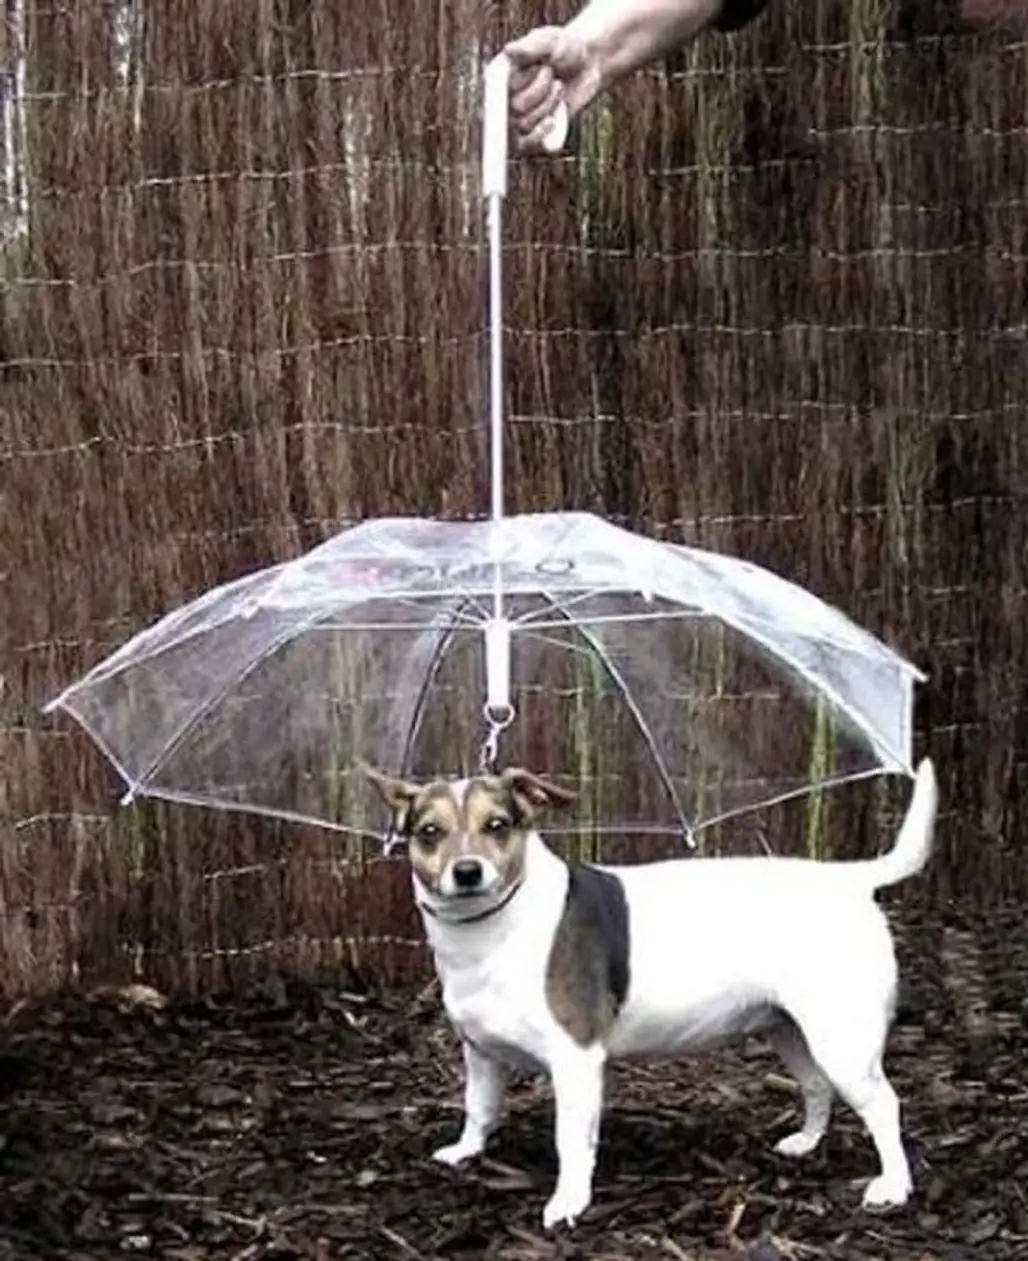 The Pet Umbrella